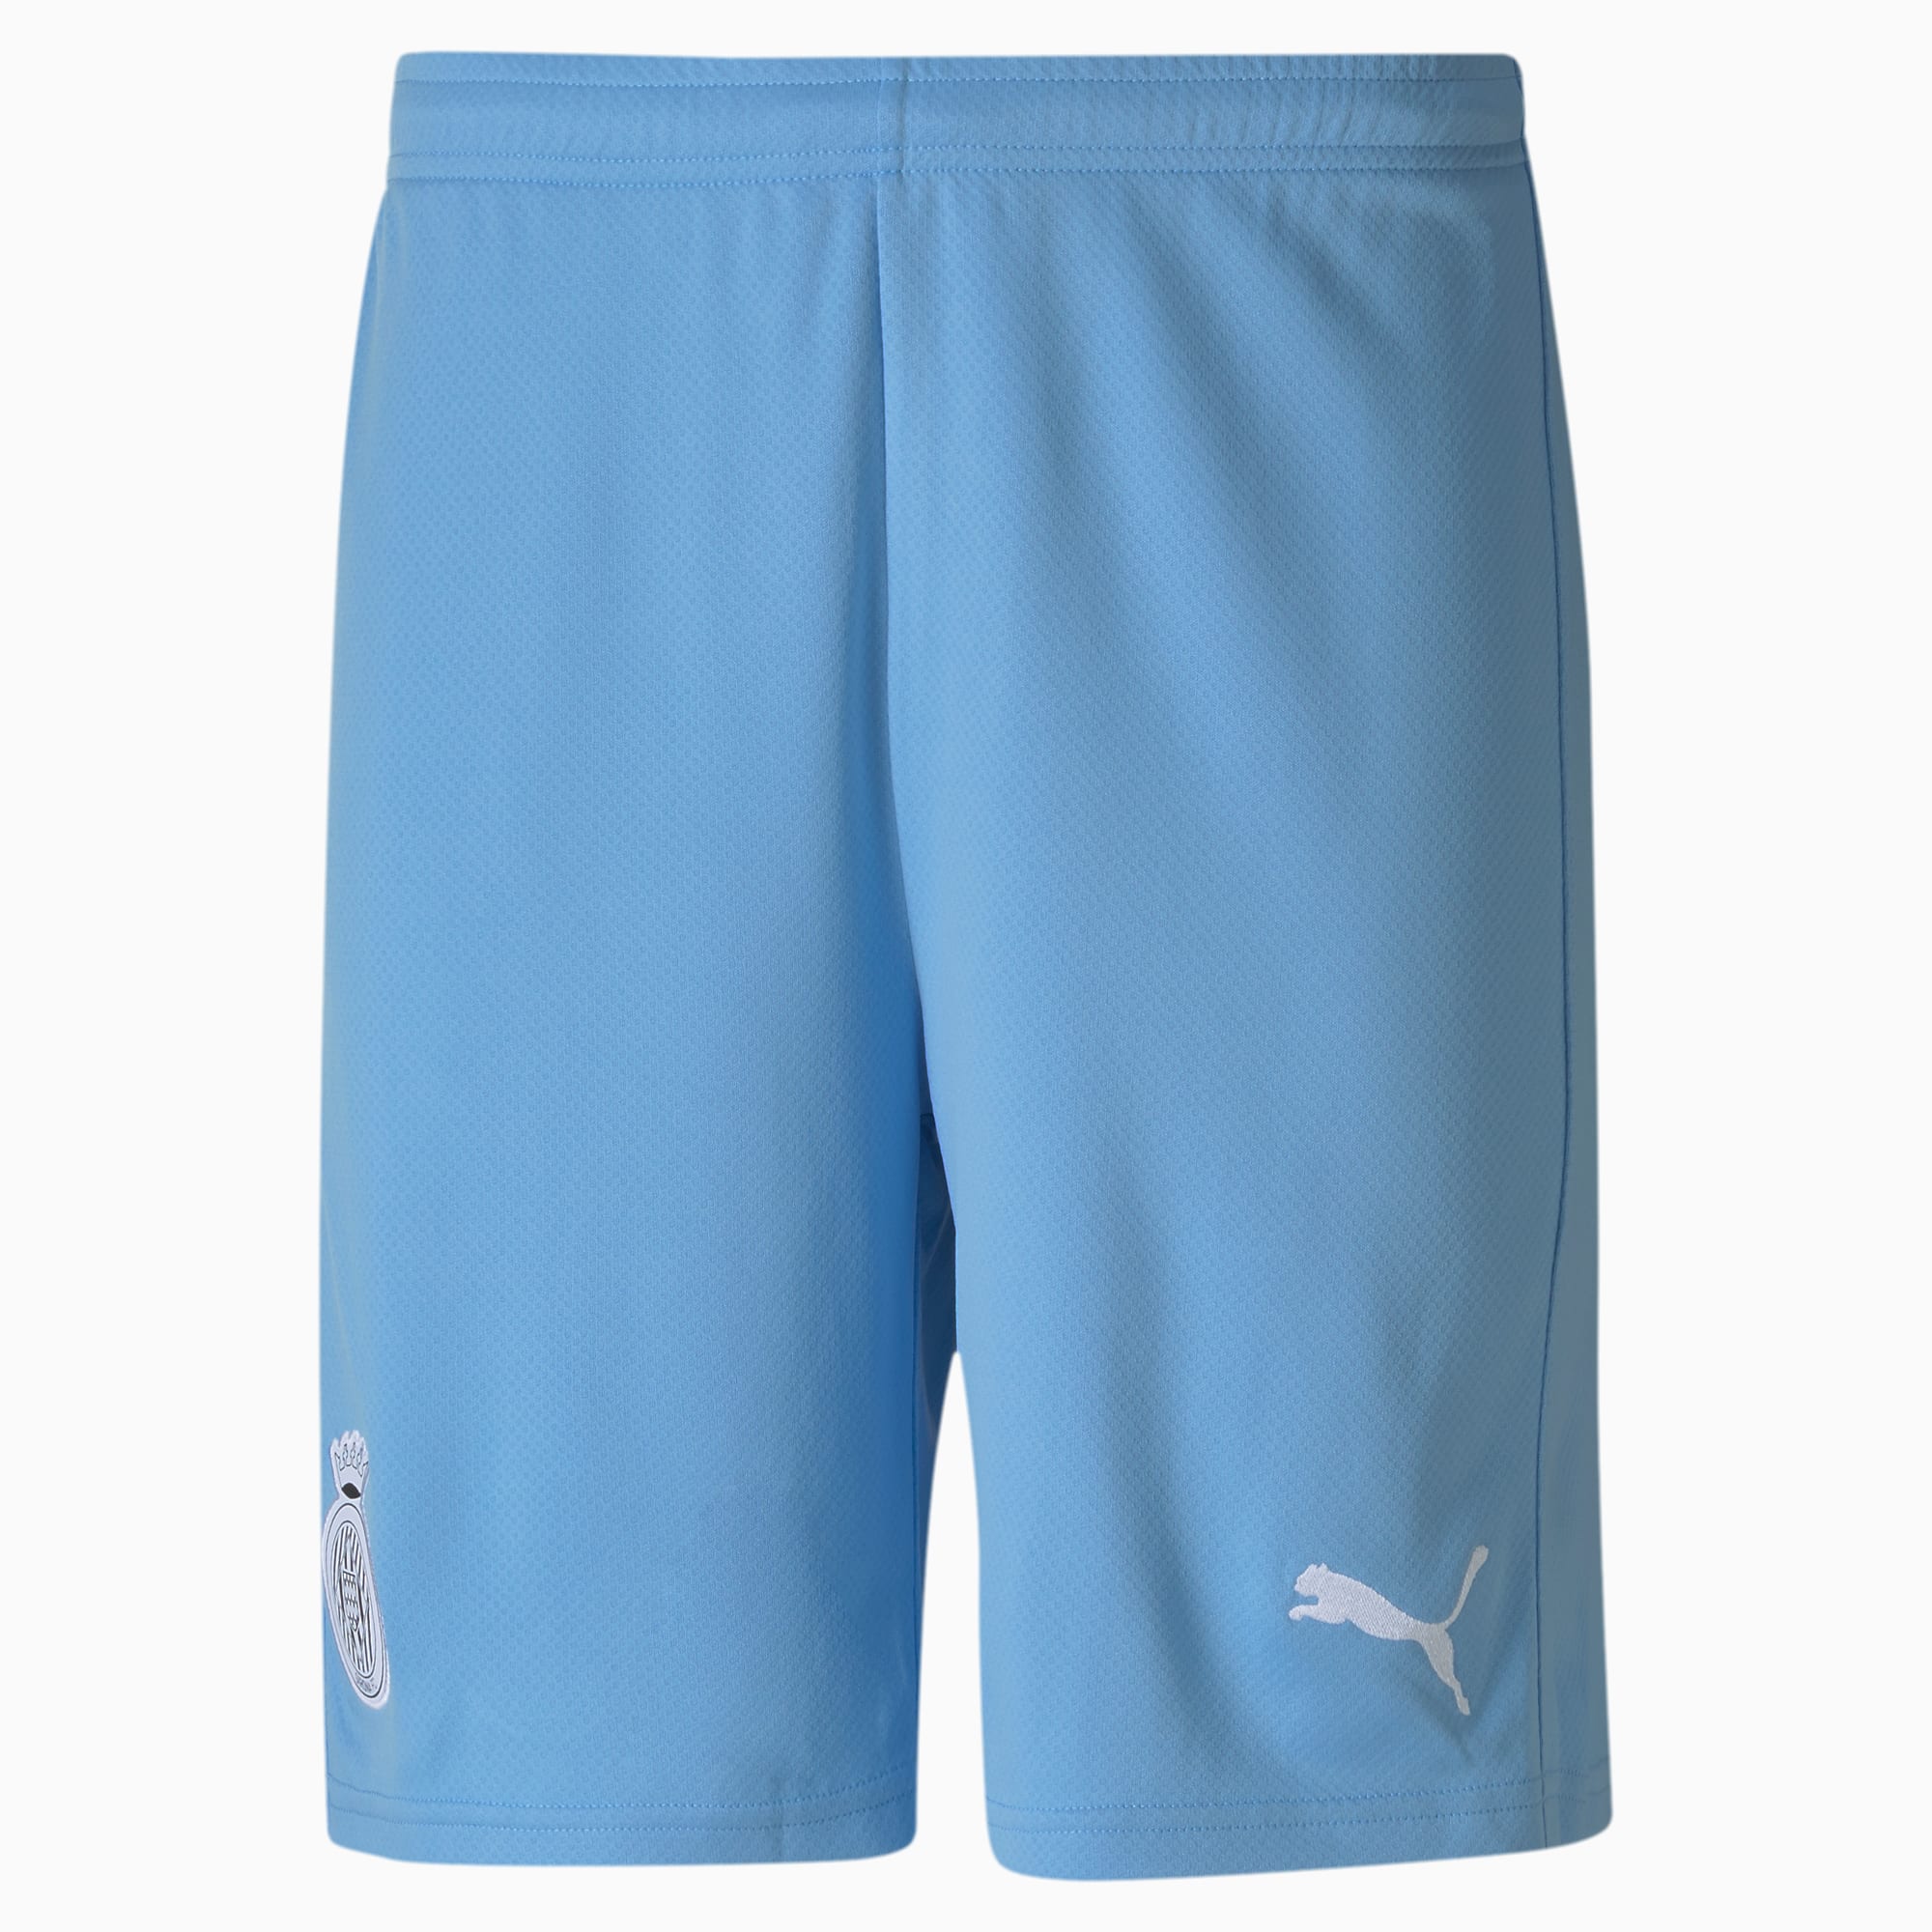 Girona Replica Men's Football Shorts 